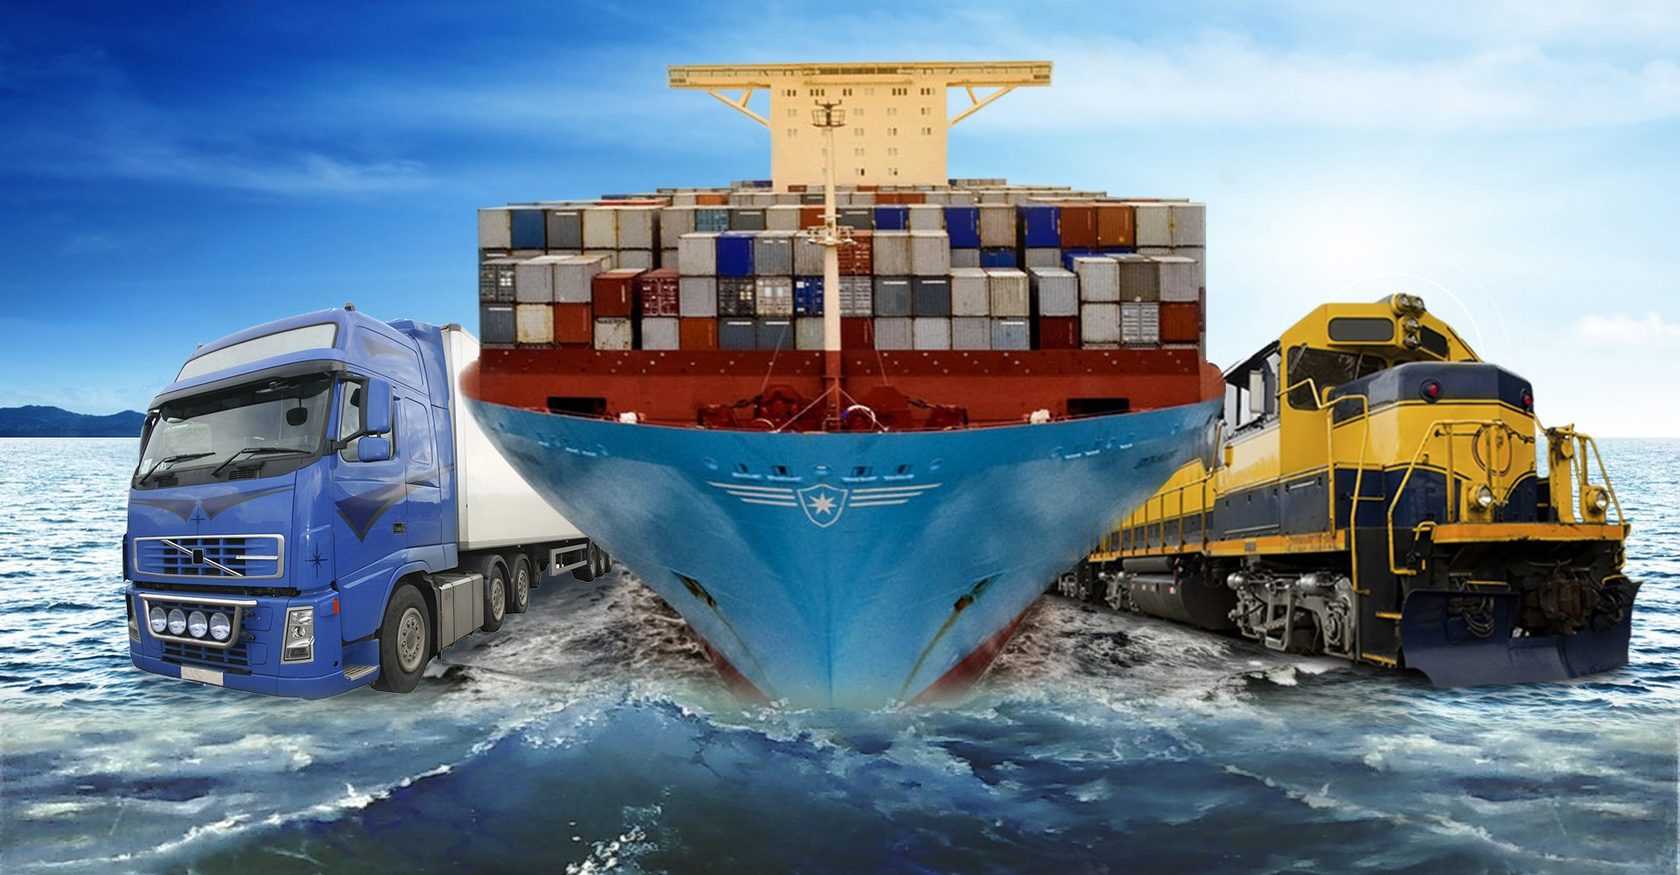 Грузовые контейнеры: типы, конструкция, применение – склад и техника